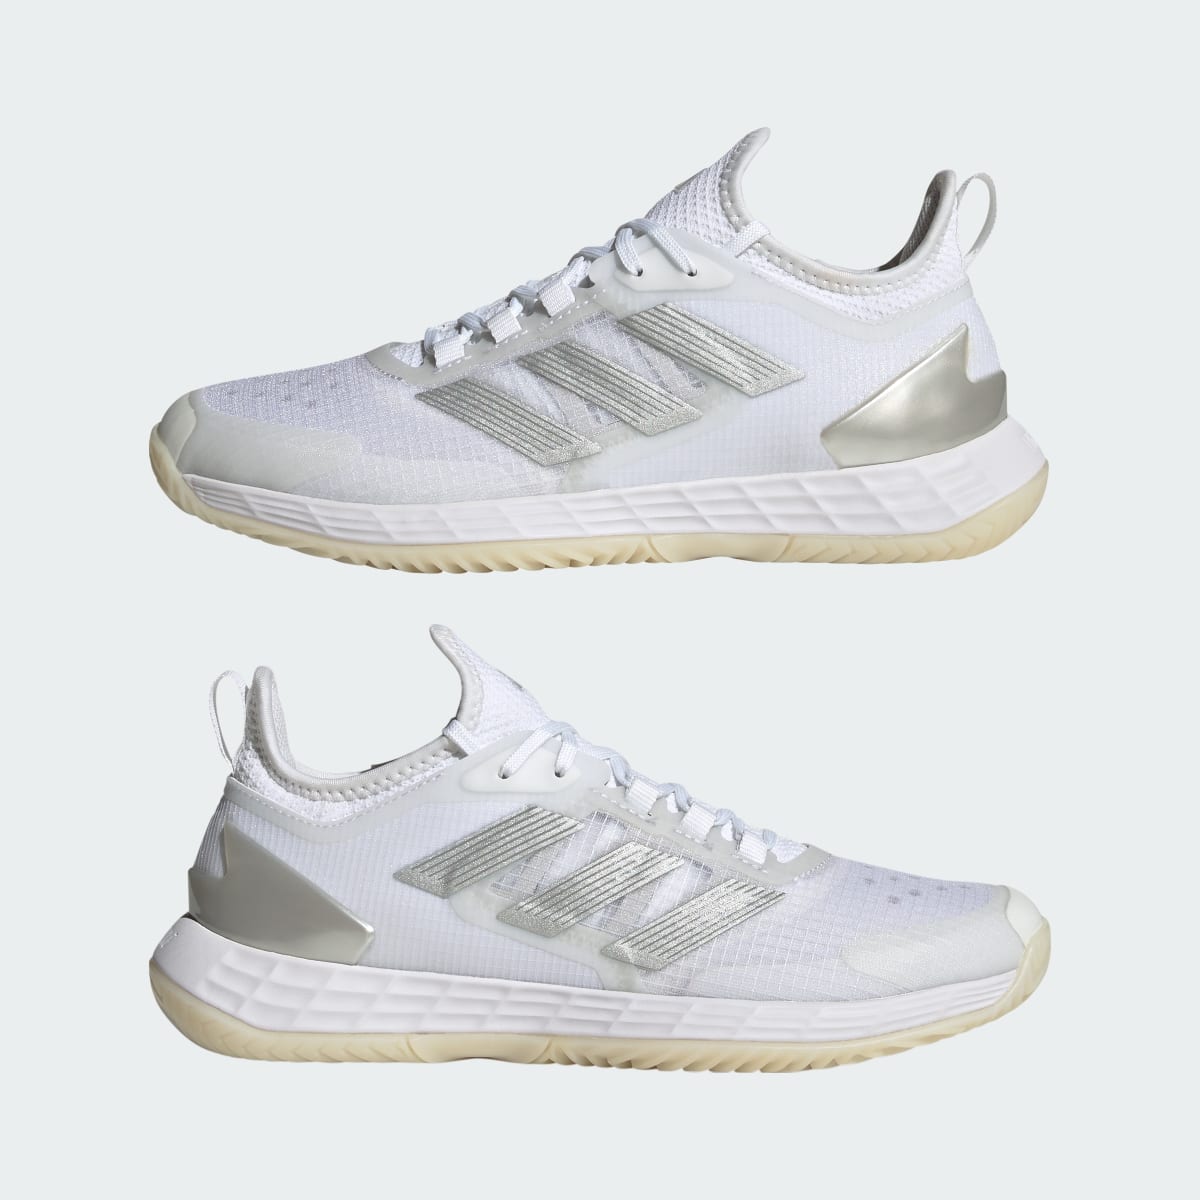 Adidas Adizero Ubersonic 4.1 Tennis Shoes. 8